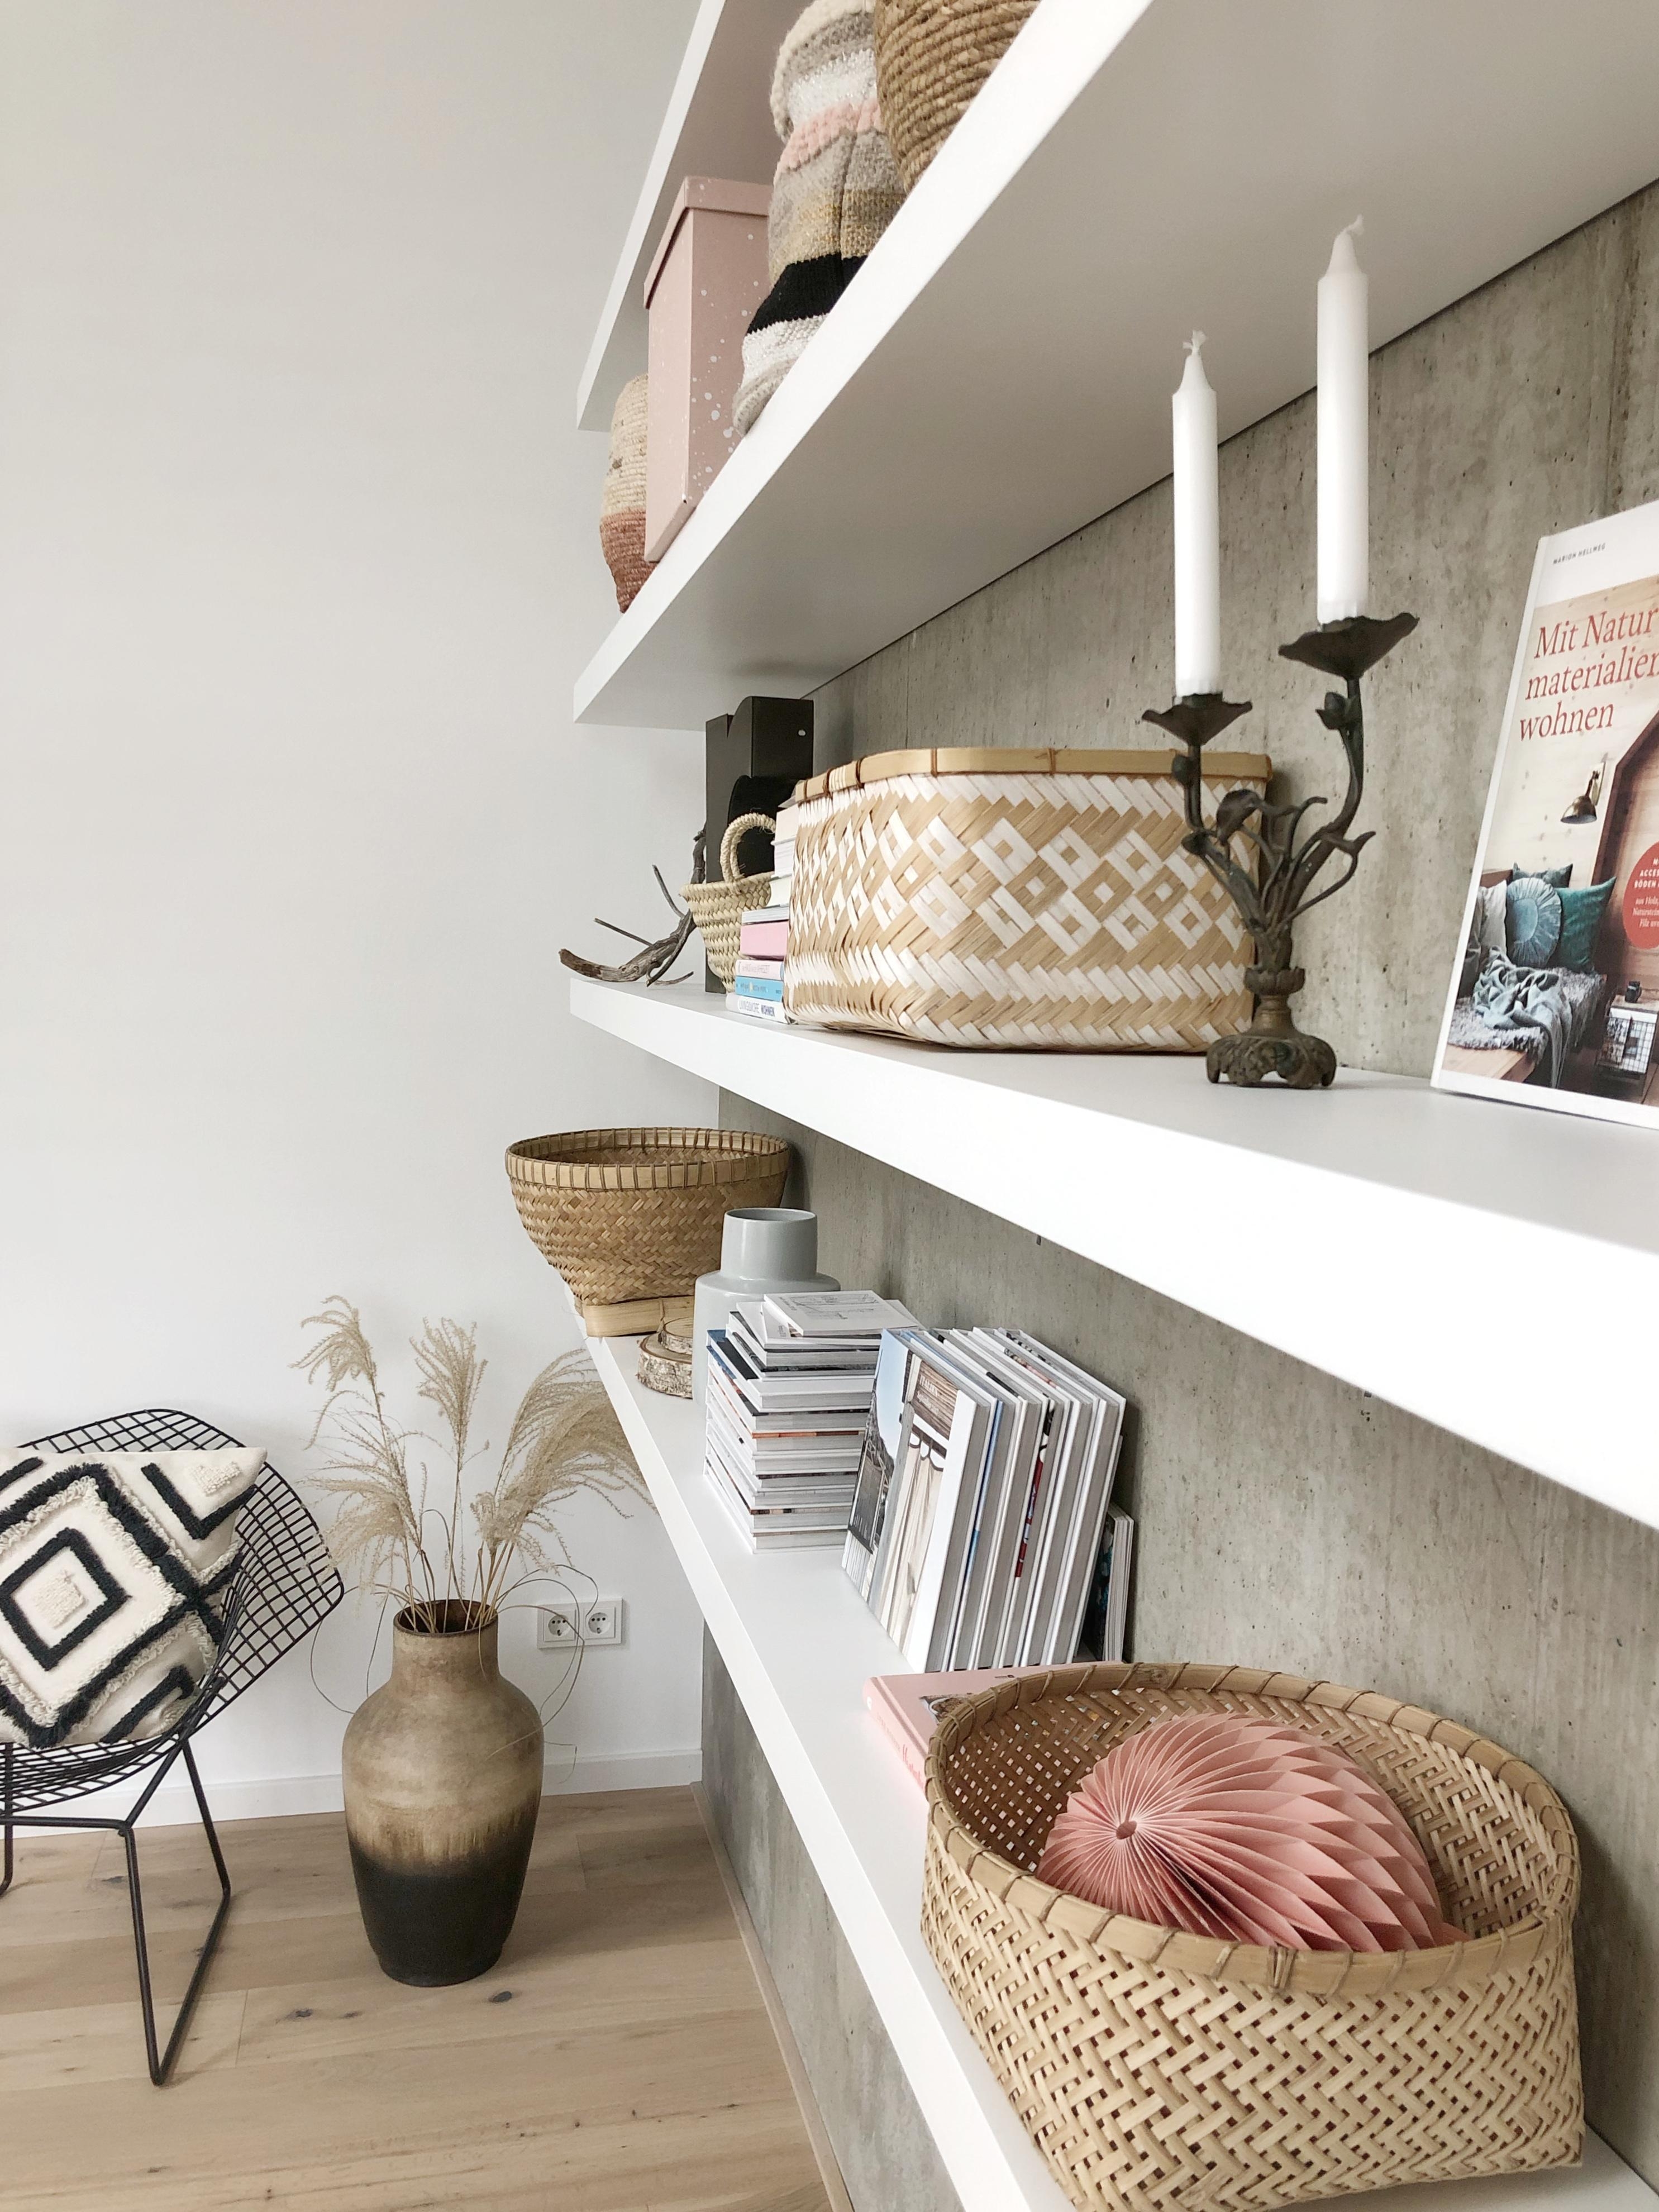 Shelf-Details!
#shelf#wohnzimmer#livingroom#neubau#details#whitehome#natural#sichtbeton#modern